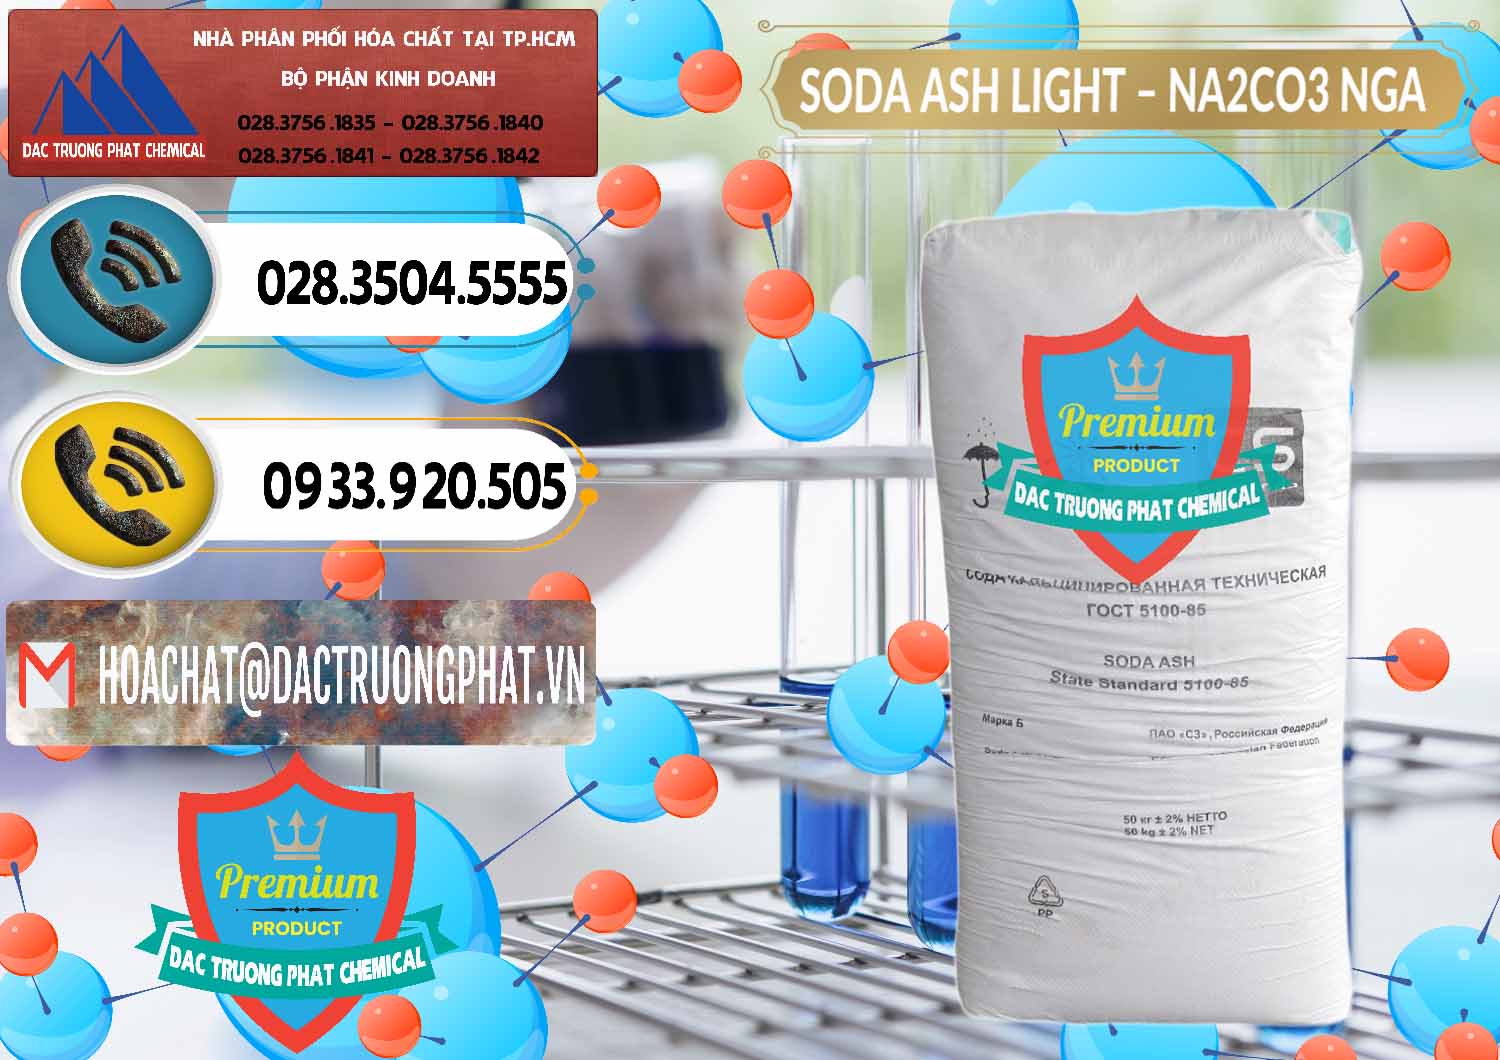 Chuyên bán và phân phối Soda Ash Light - NA2CO3 Nga Russia - 0128 - Công ty cung cấp và phân phối hóa chất tại TP.HCM - hoachatdetnhuom.vn